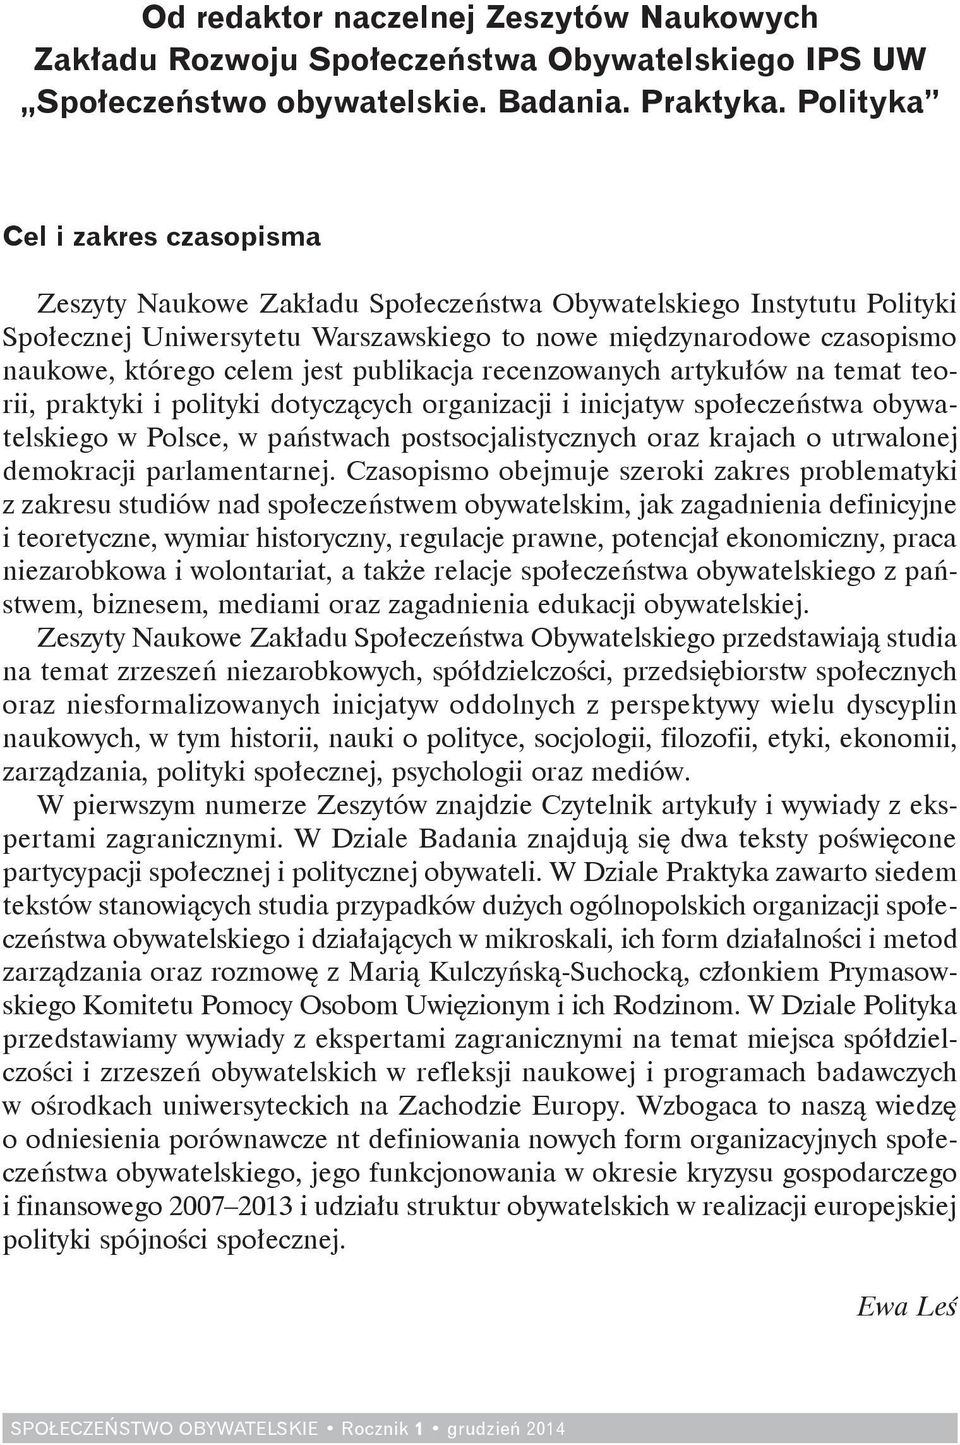 jest publikacja recenzowanych artykułów na temat teorii, praktyki i polityki dotyczących organizacji i inicjatyw społeczeństwa obywatelskiego w Polsce, w państwach postsocjalistycznych oraz krajach o